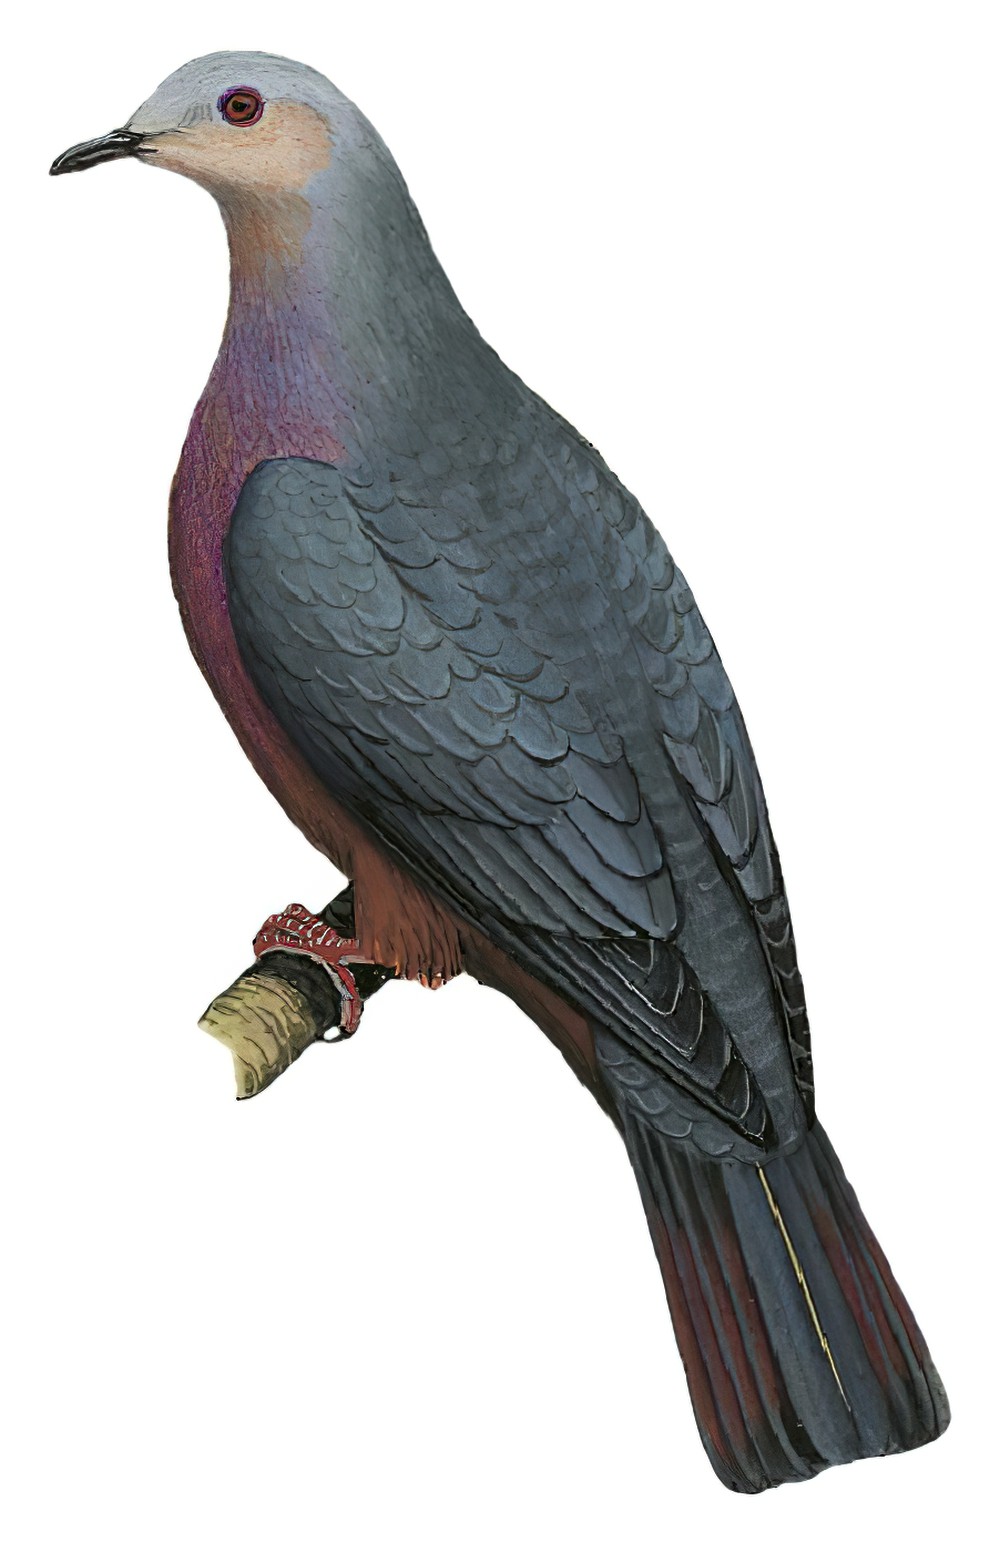 栗腹皇鸠 / Chestnut-bellied Imperial Pigeon / Ducula brenchleyi